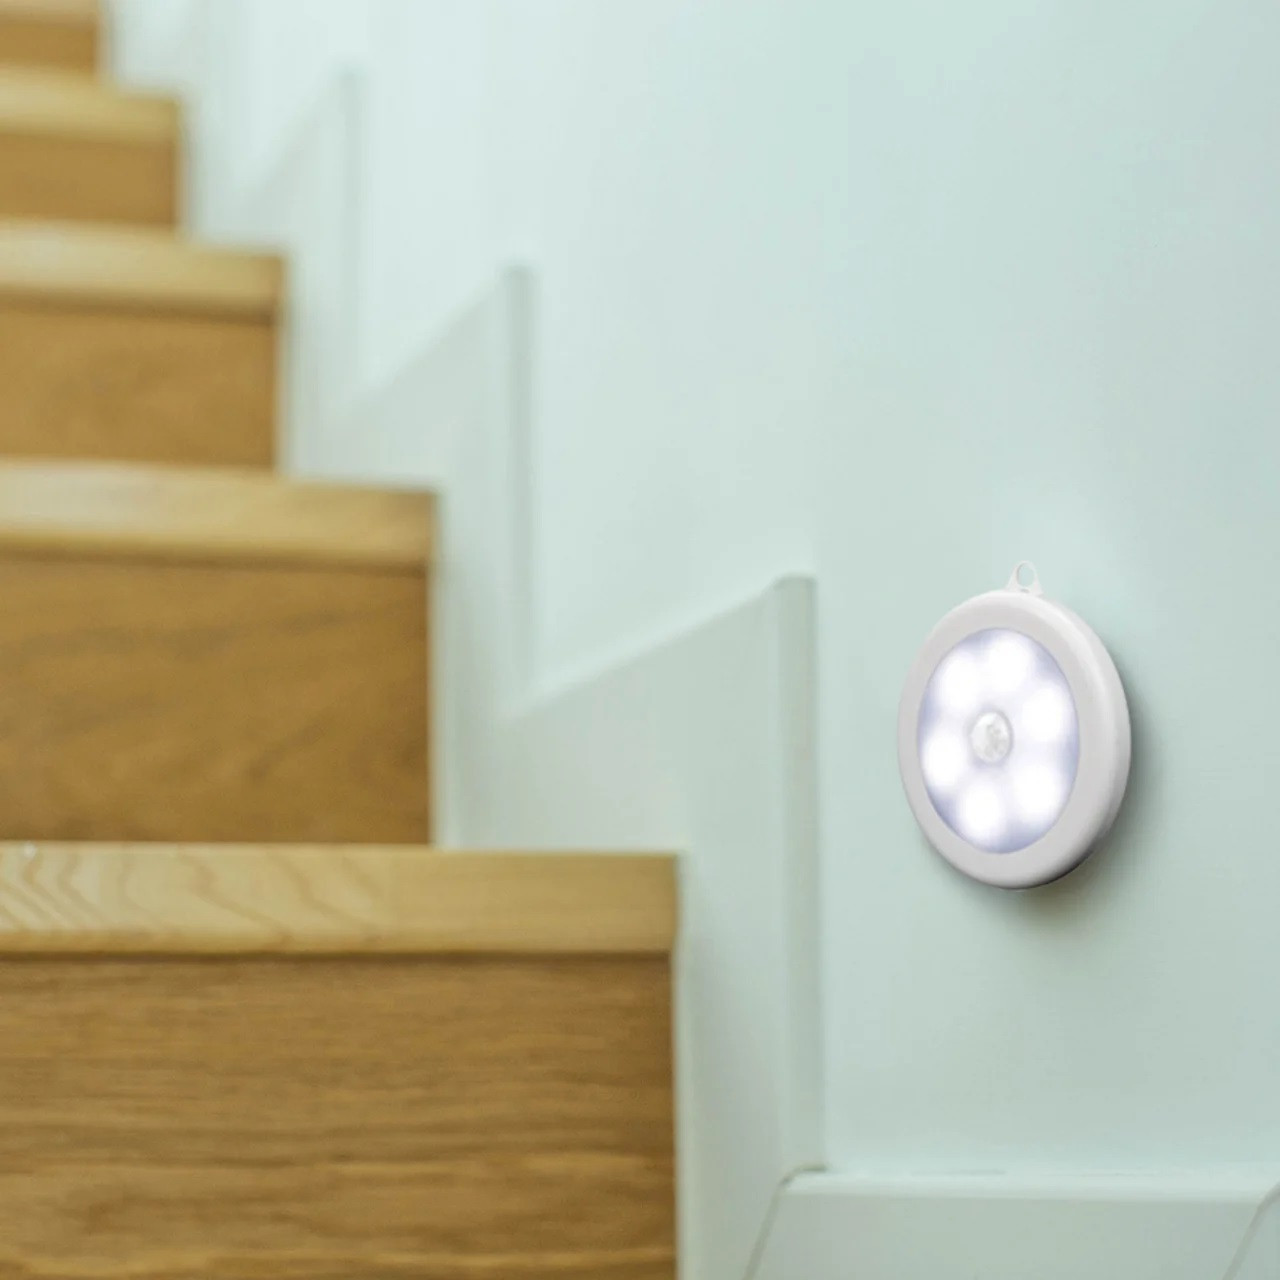 LED світильник з датчиком руху для дому - зручне освітлення шафи, комода, підсобки - хол. білий